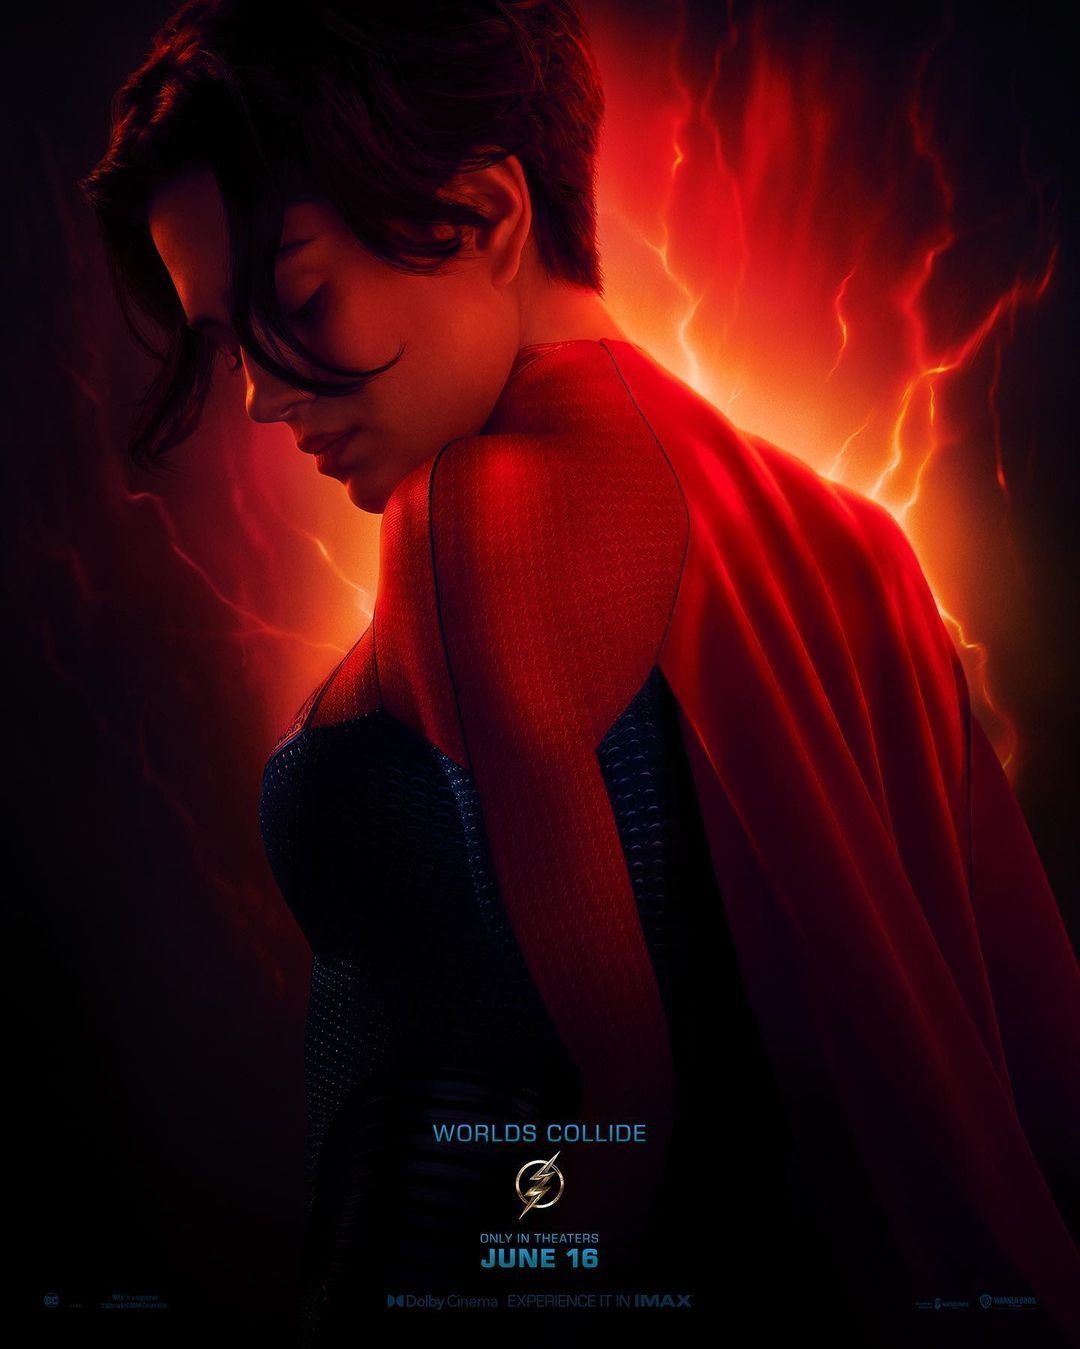 Mỹ Nhân đóng Supergirl Trong The Flash Chuộng Mặc Không Nội Y 9567